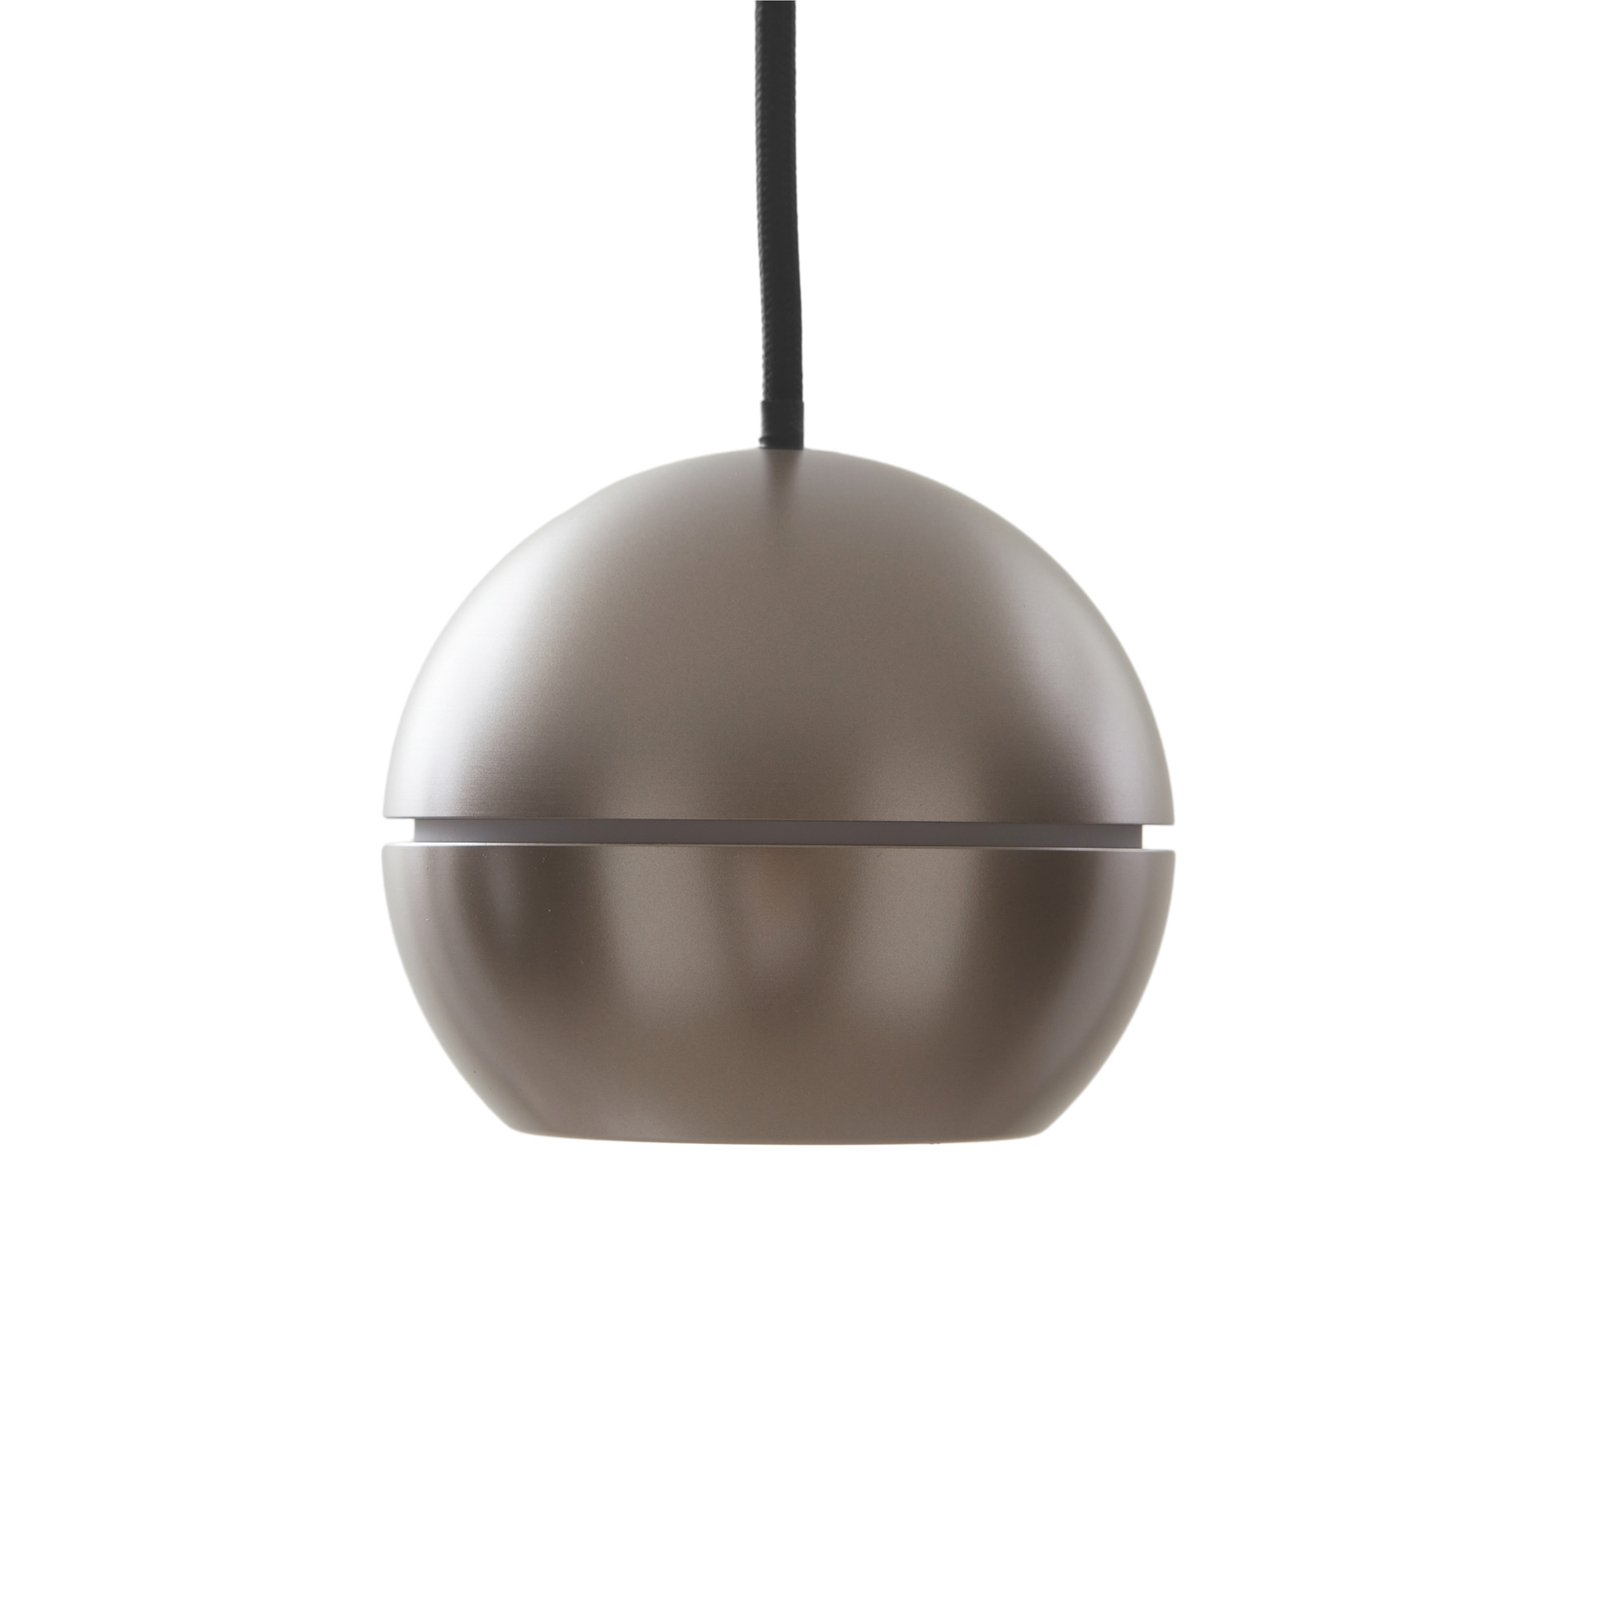 Lucande LED-es függőlámpa Plarion, nikkel színű, alumínium, Ø 9 cm